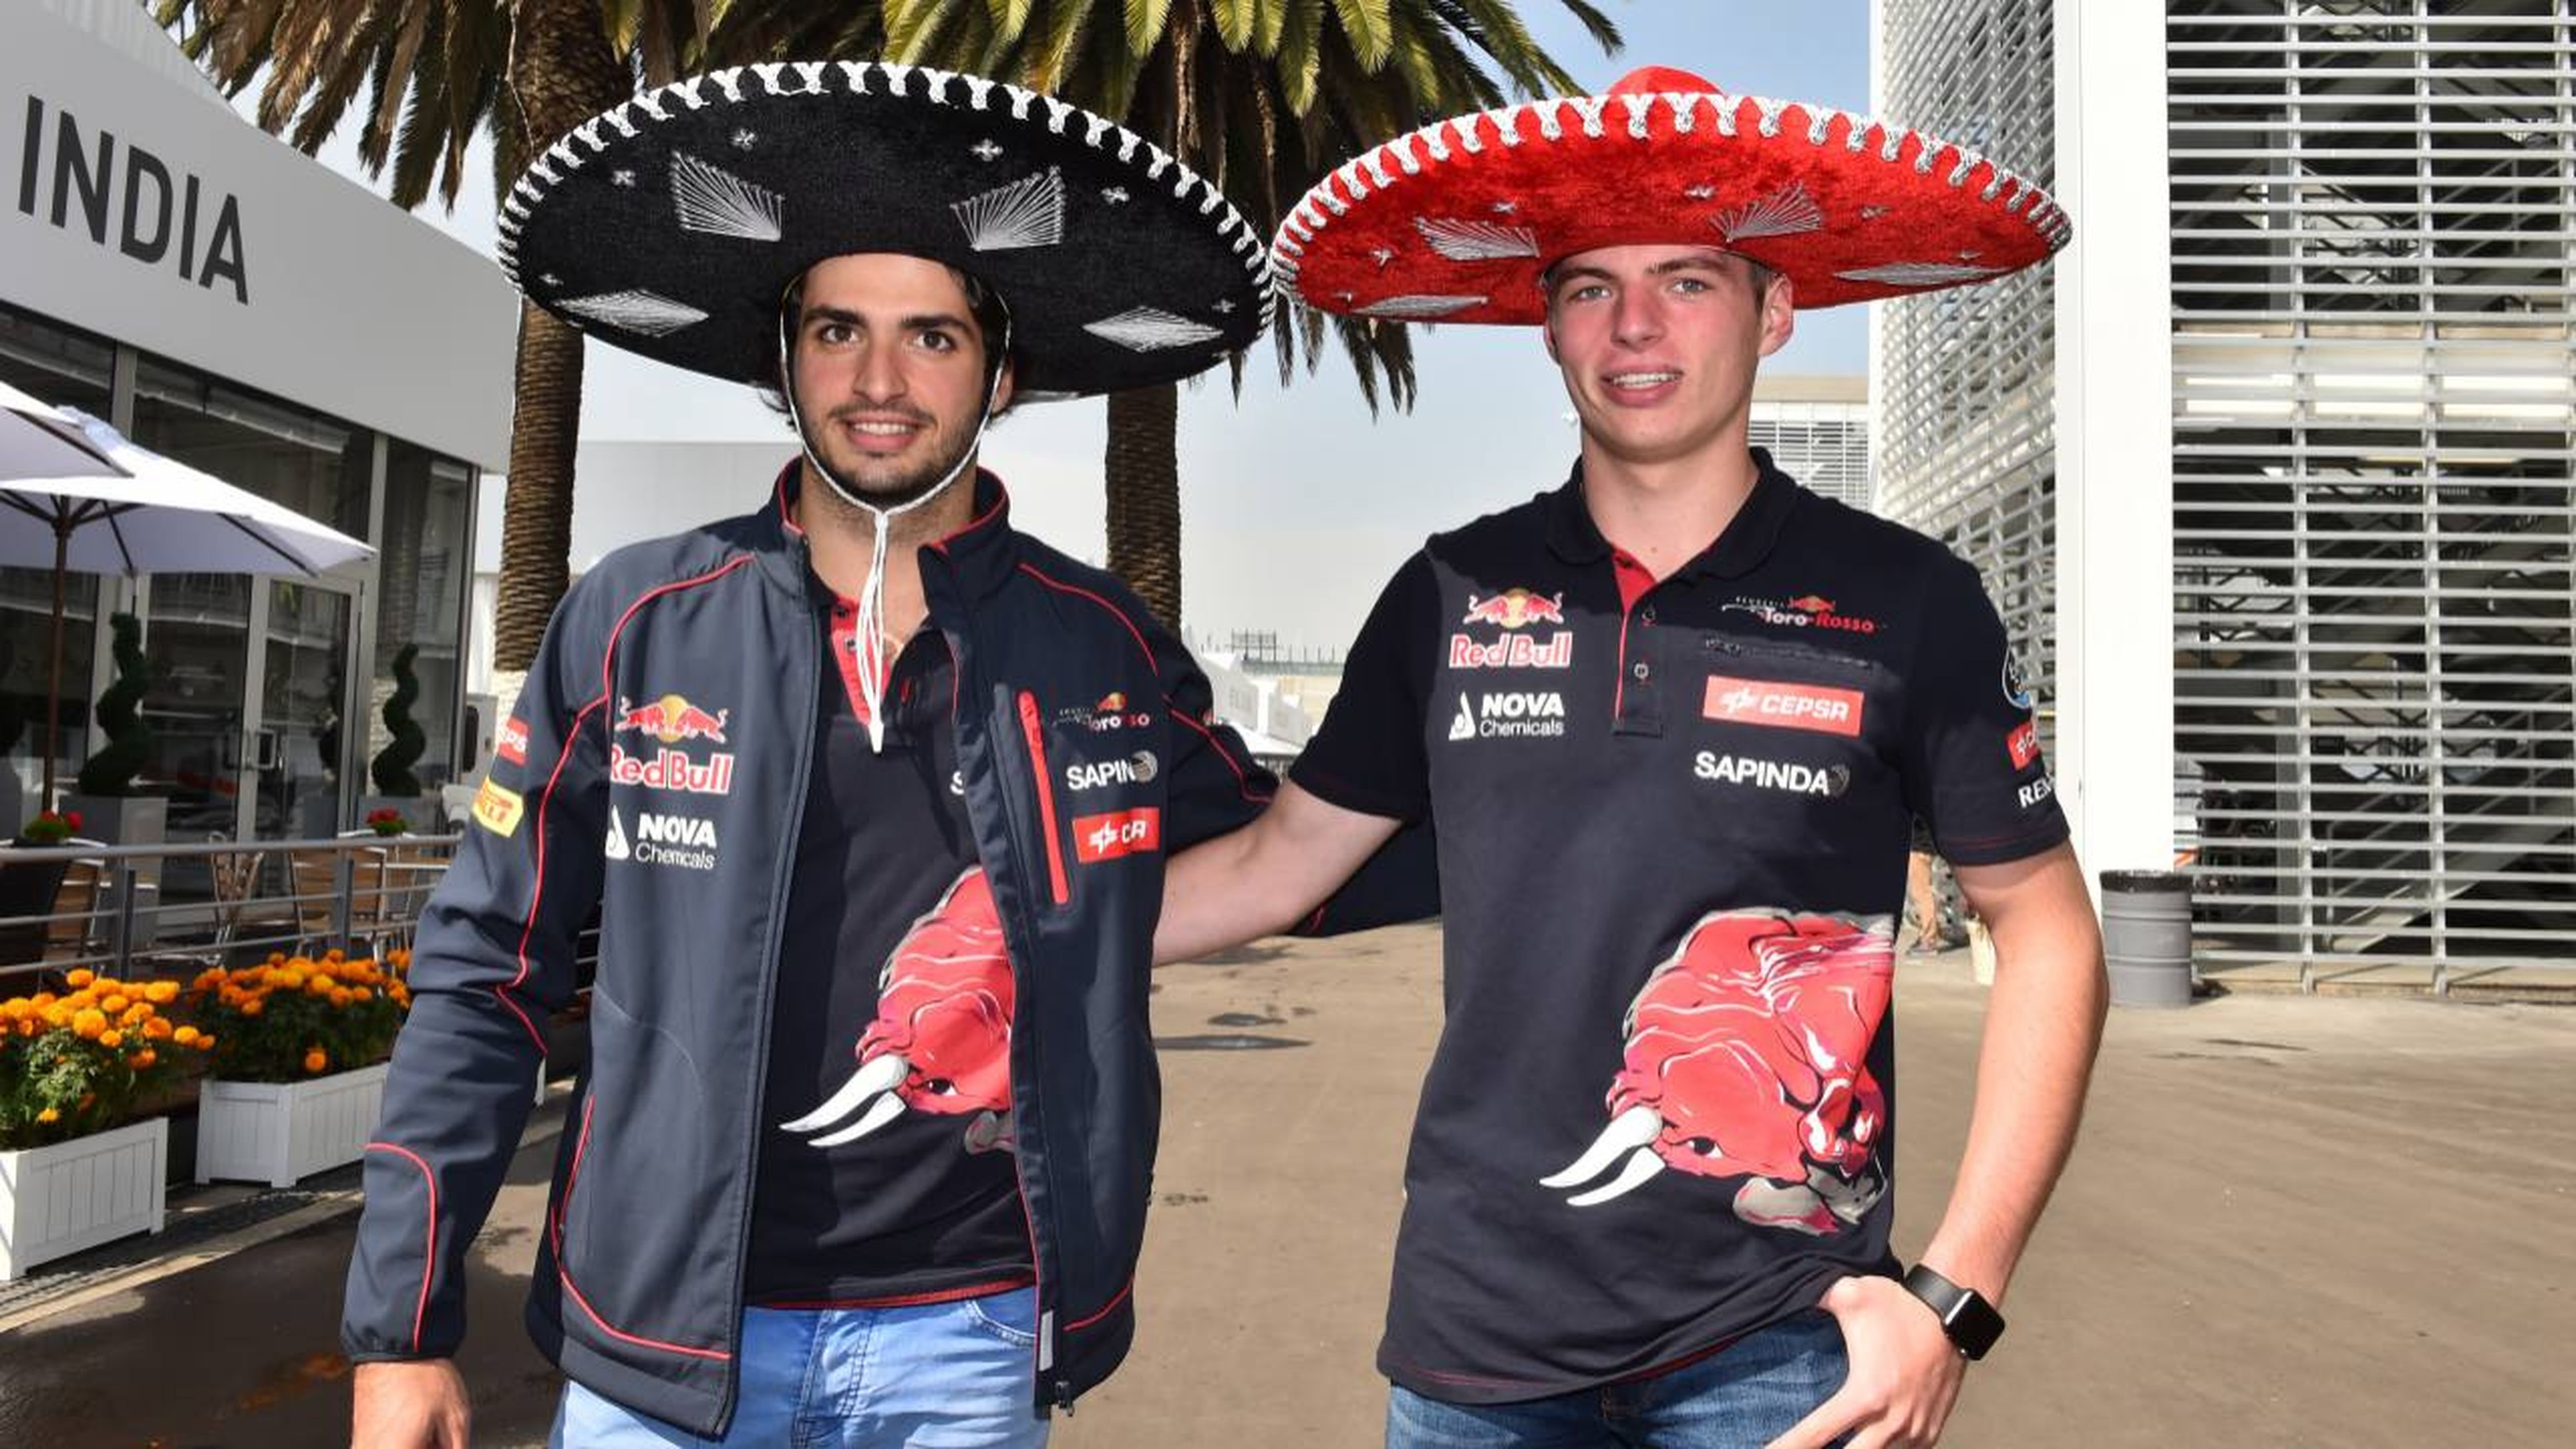 Carlos Sainz y Max Verstappen